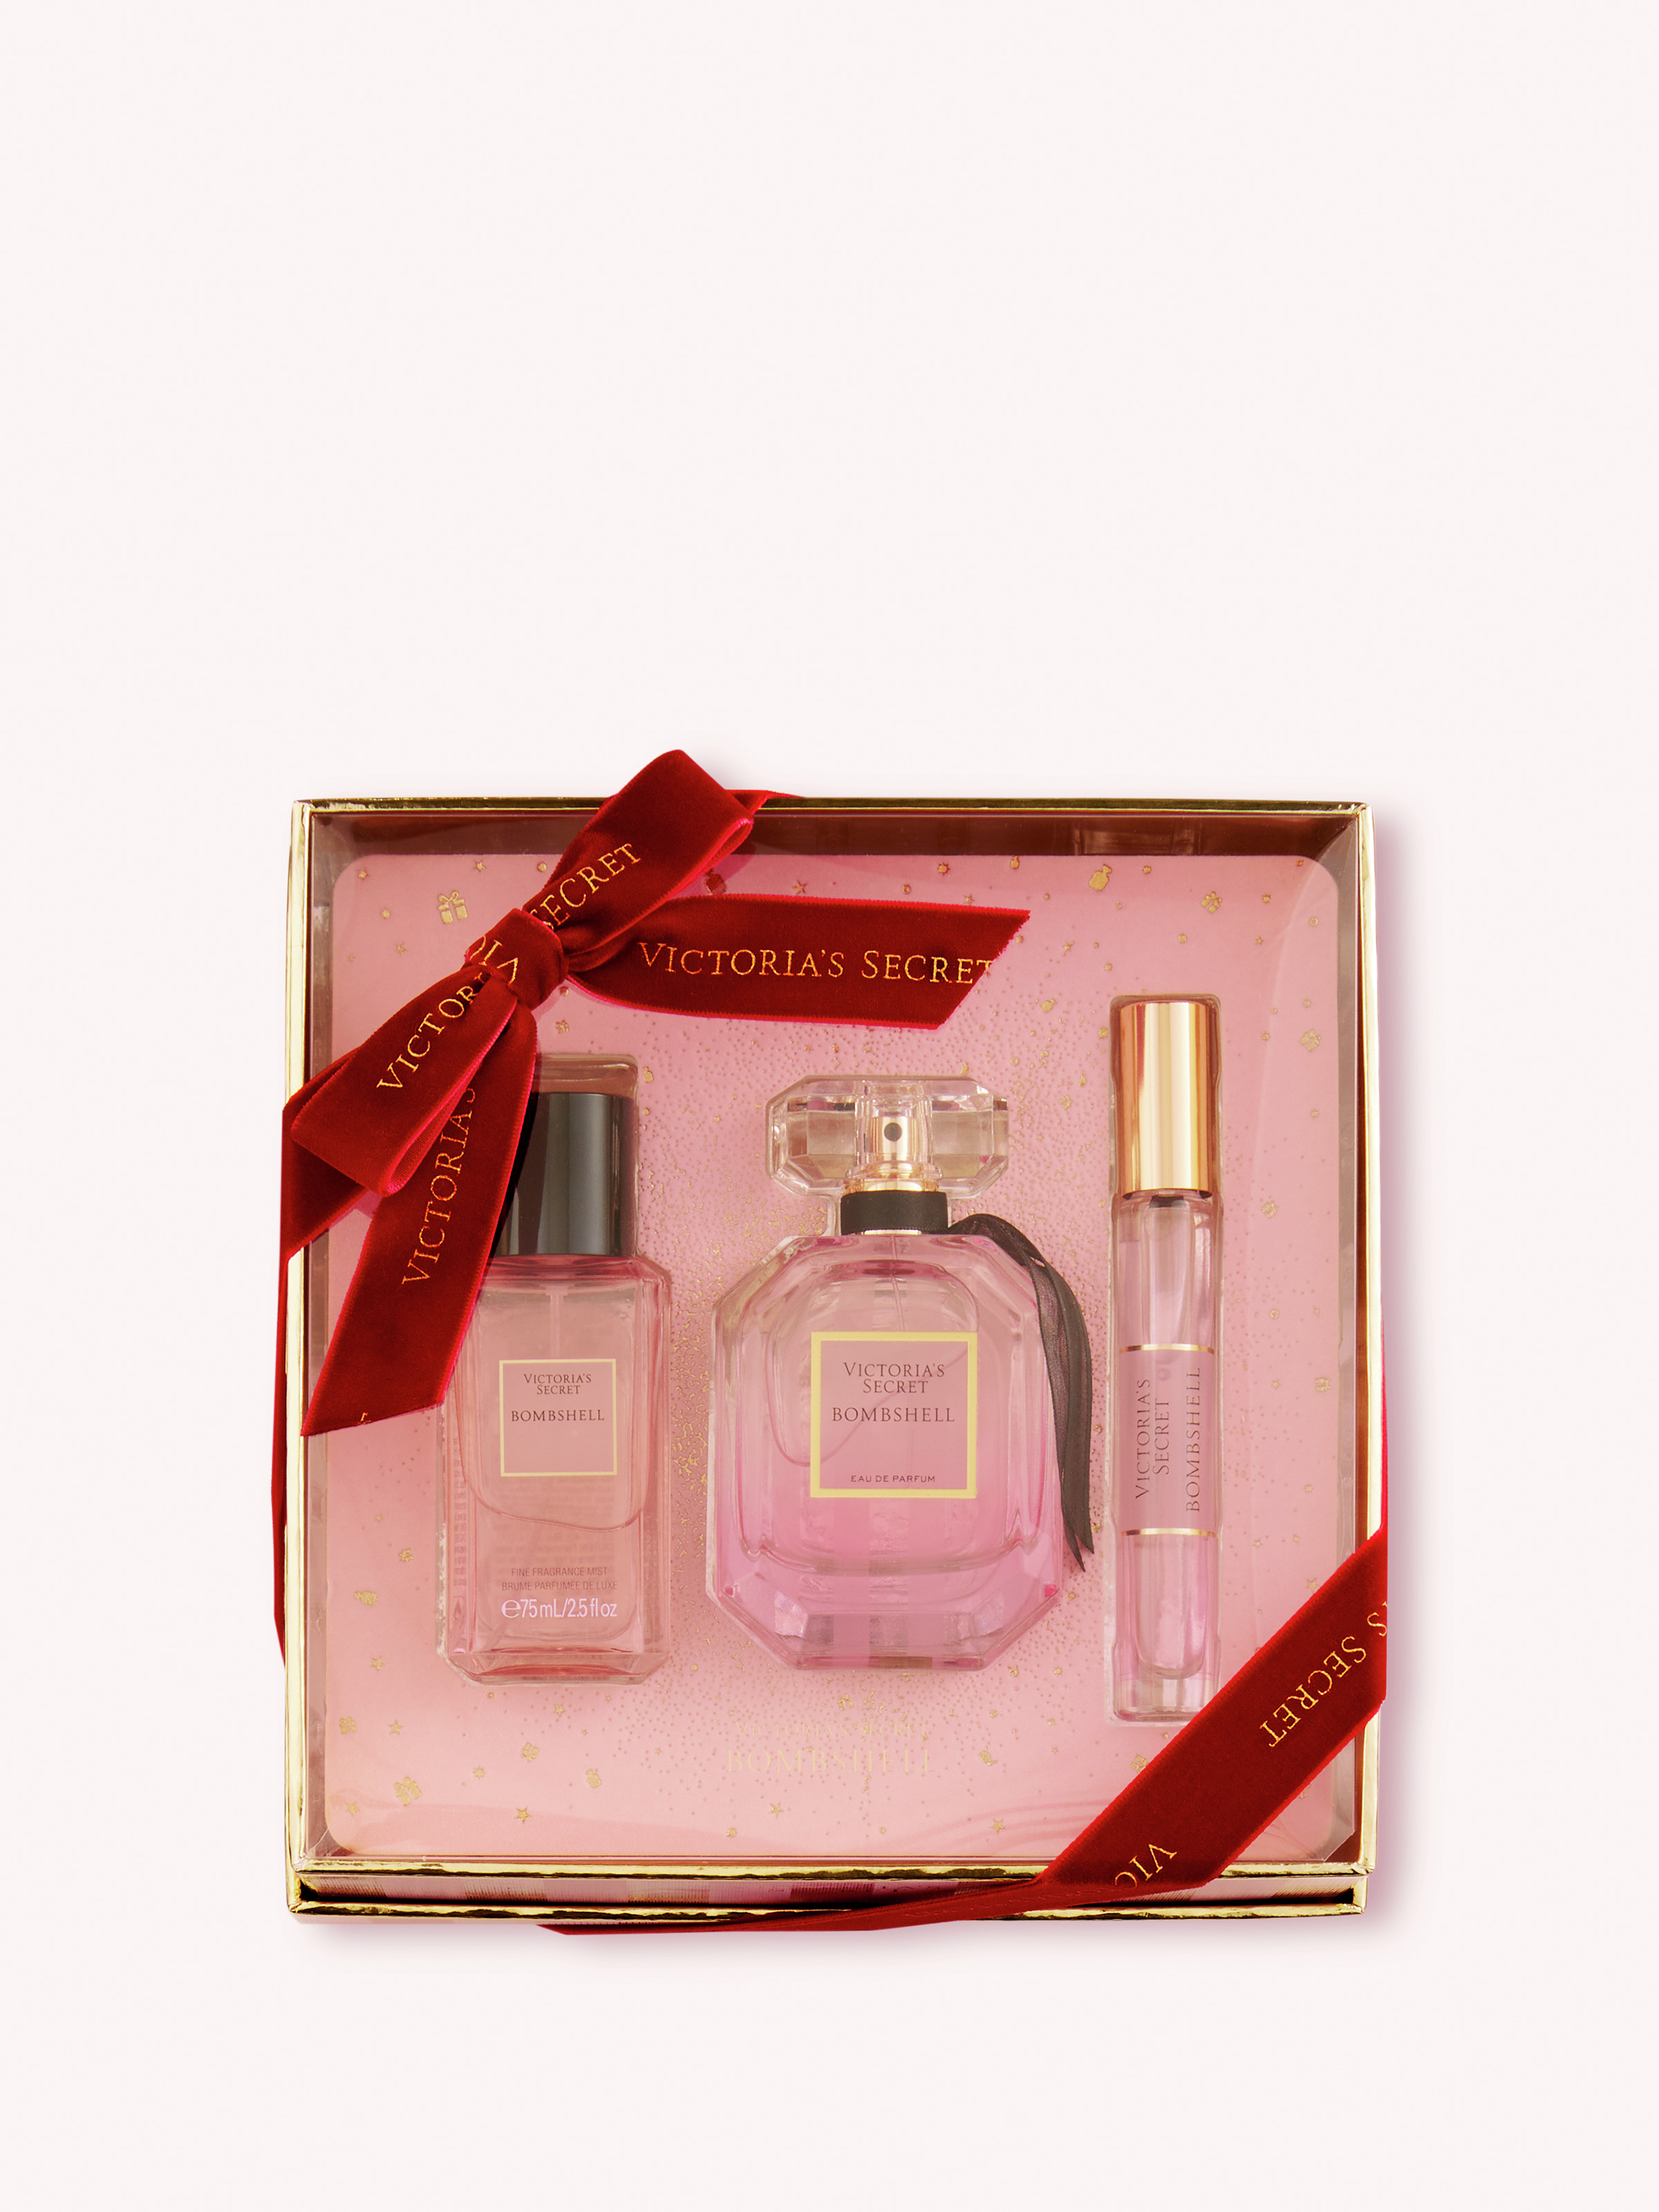 Bombshell Fragrance Gift Set image number null